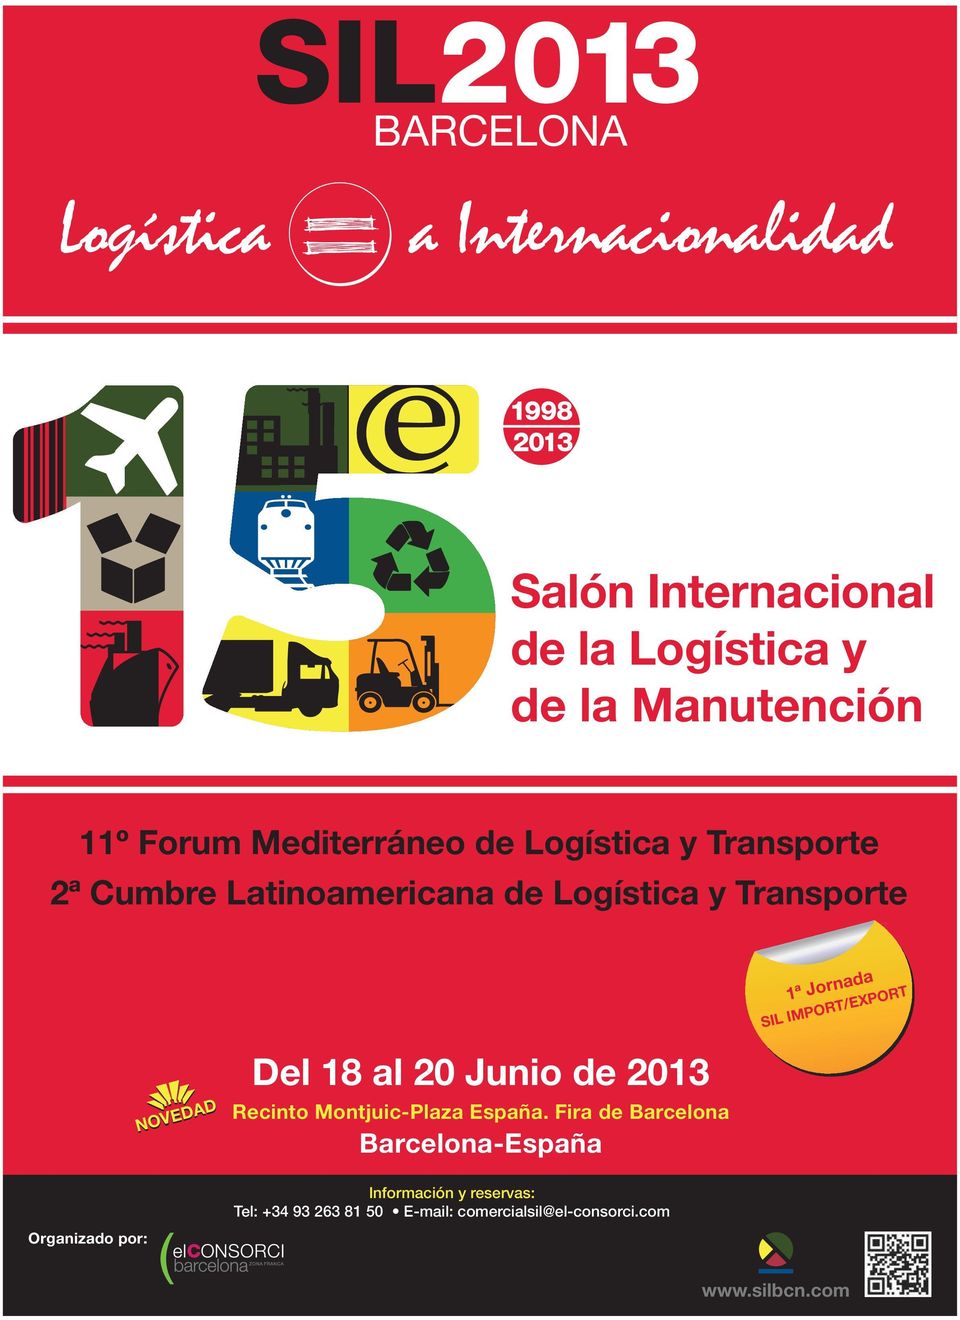 IMPORT/EXPORT NOVEDAD Del 18 al 20 Junio de 2013 Recinto Montjuic-Plaza España.